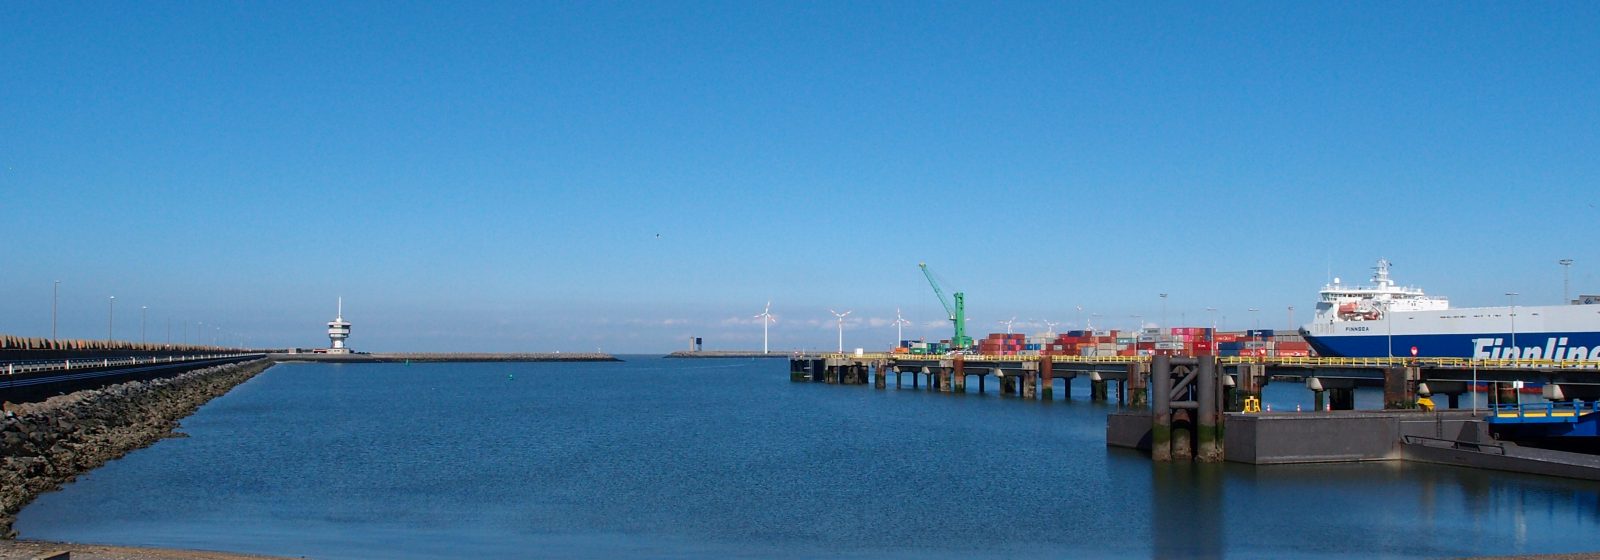 Wielingendok Zeebrugge